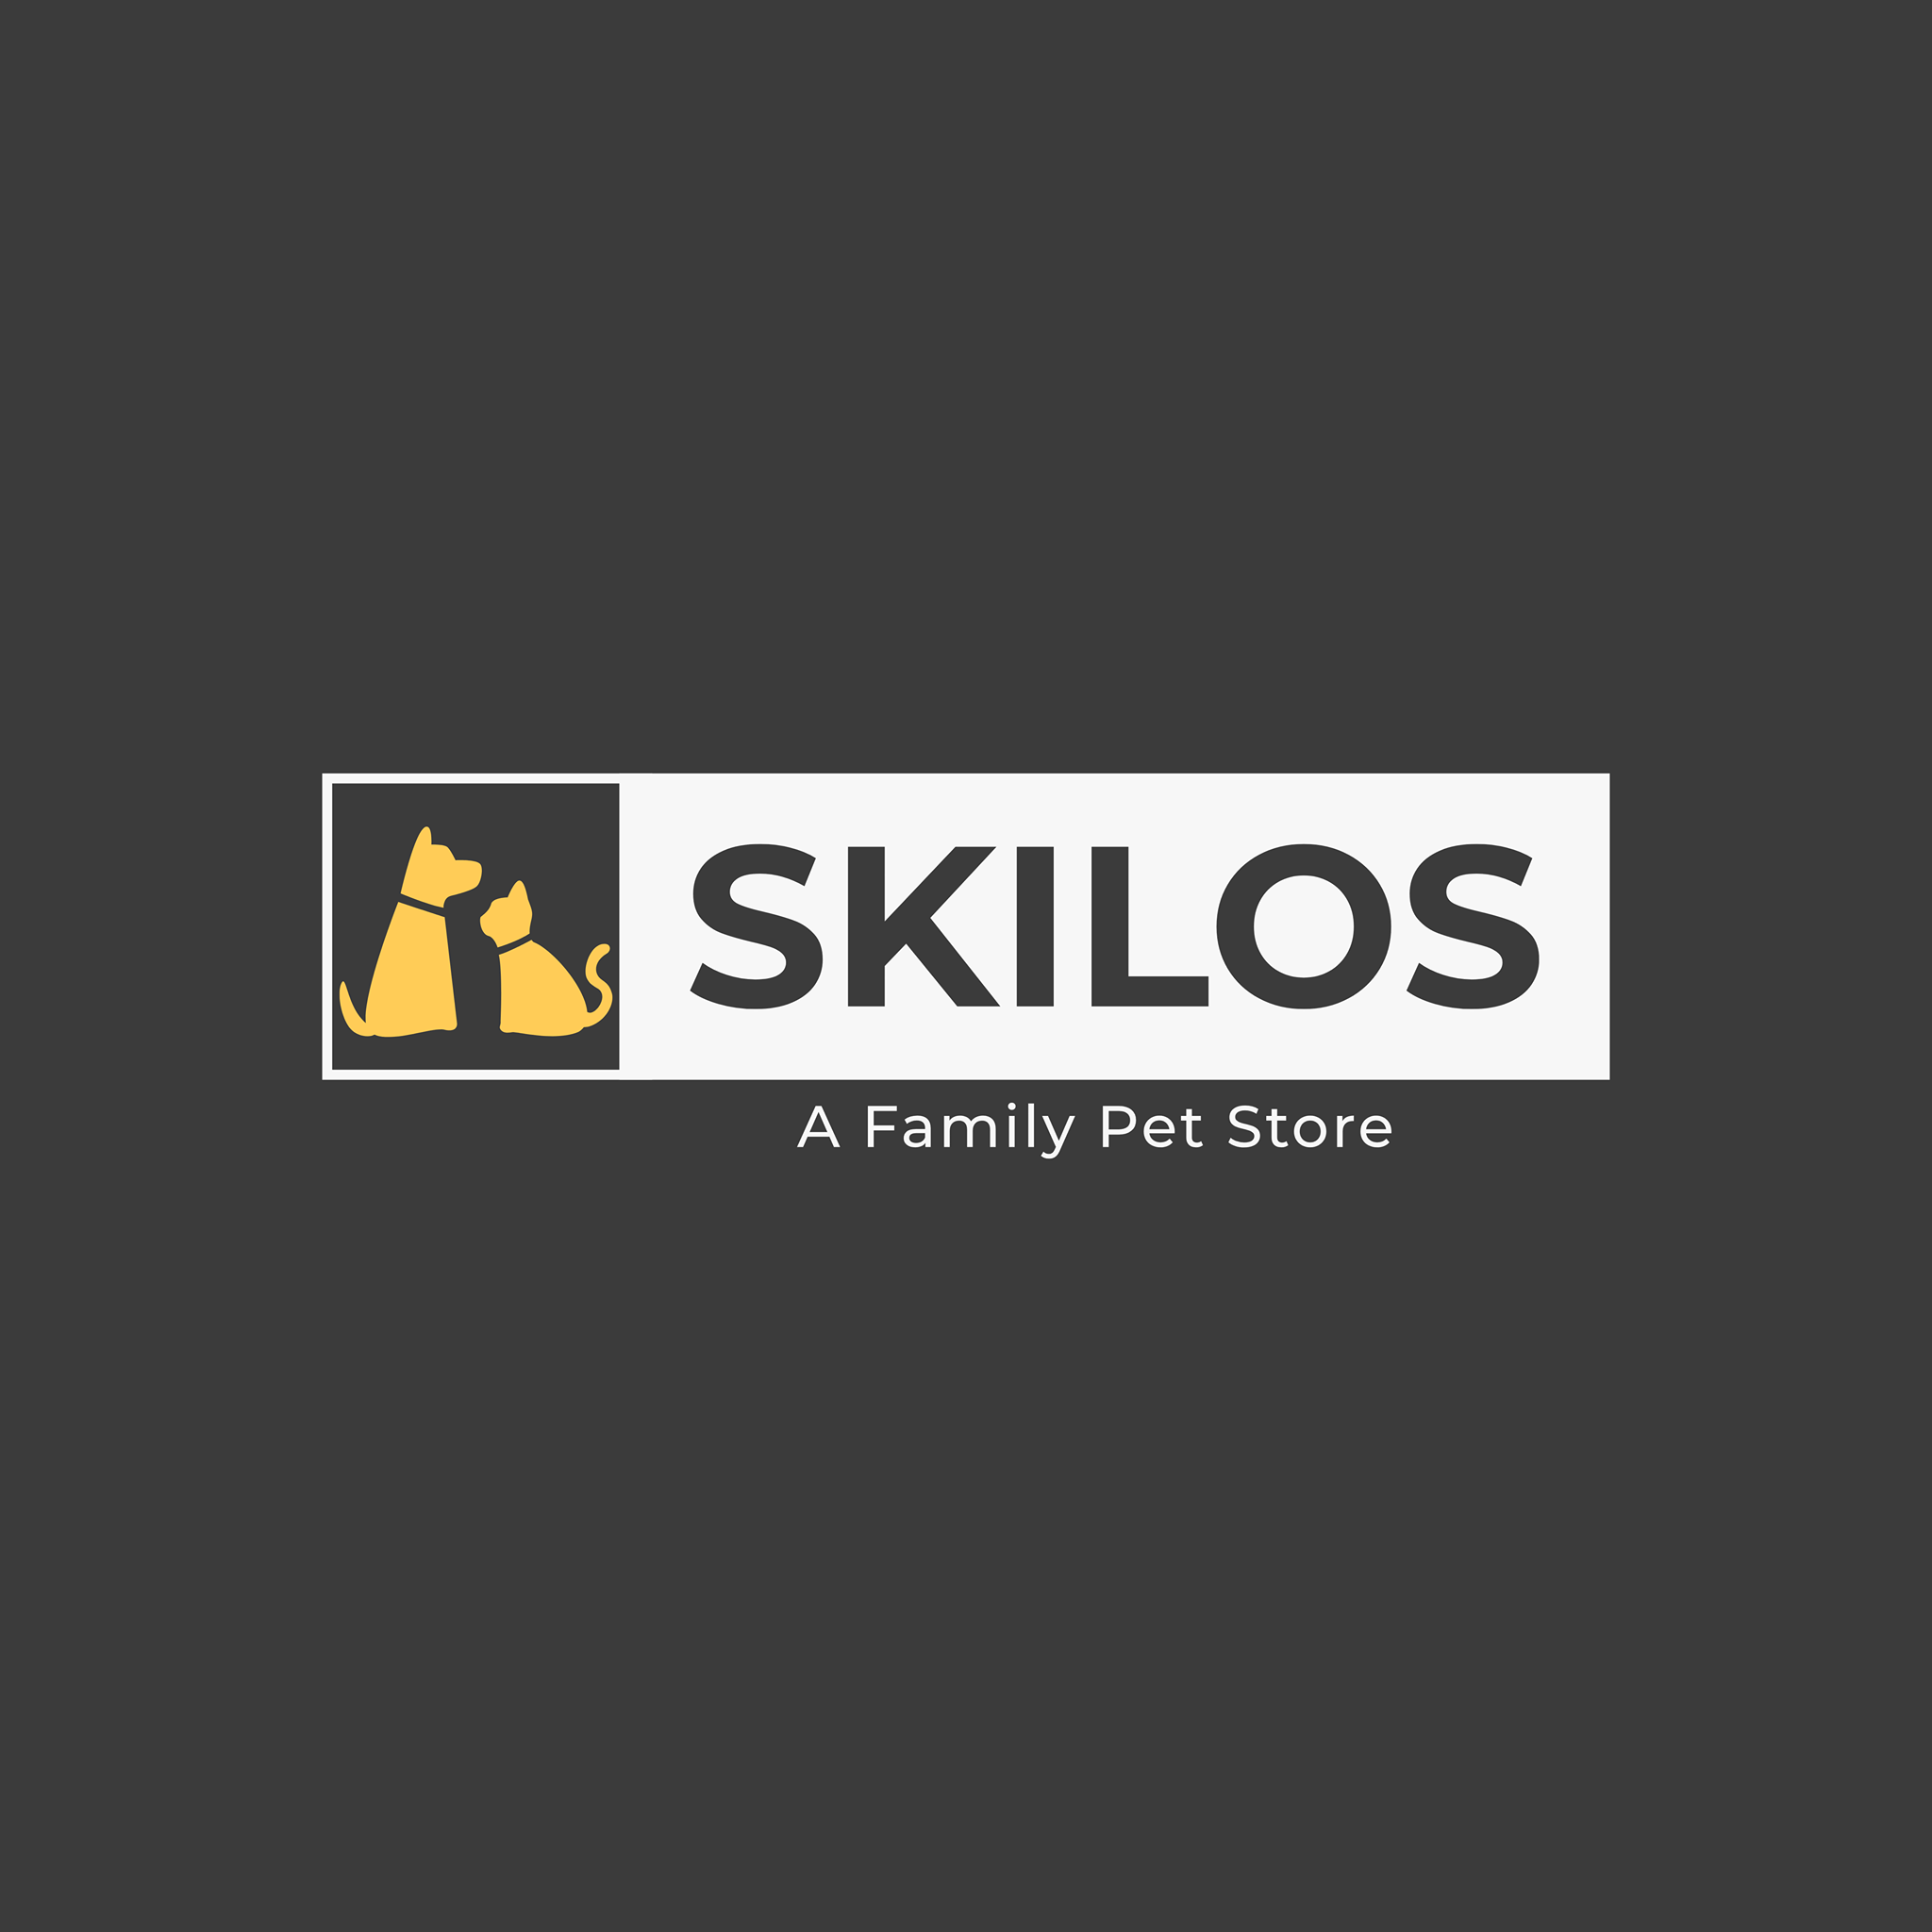 A Family Pet Store - SKILOS